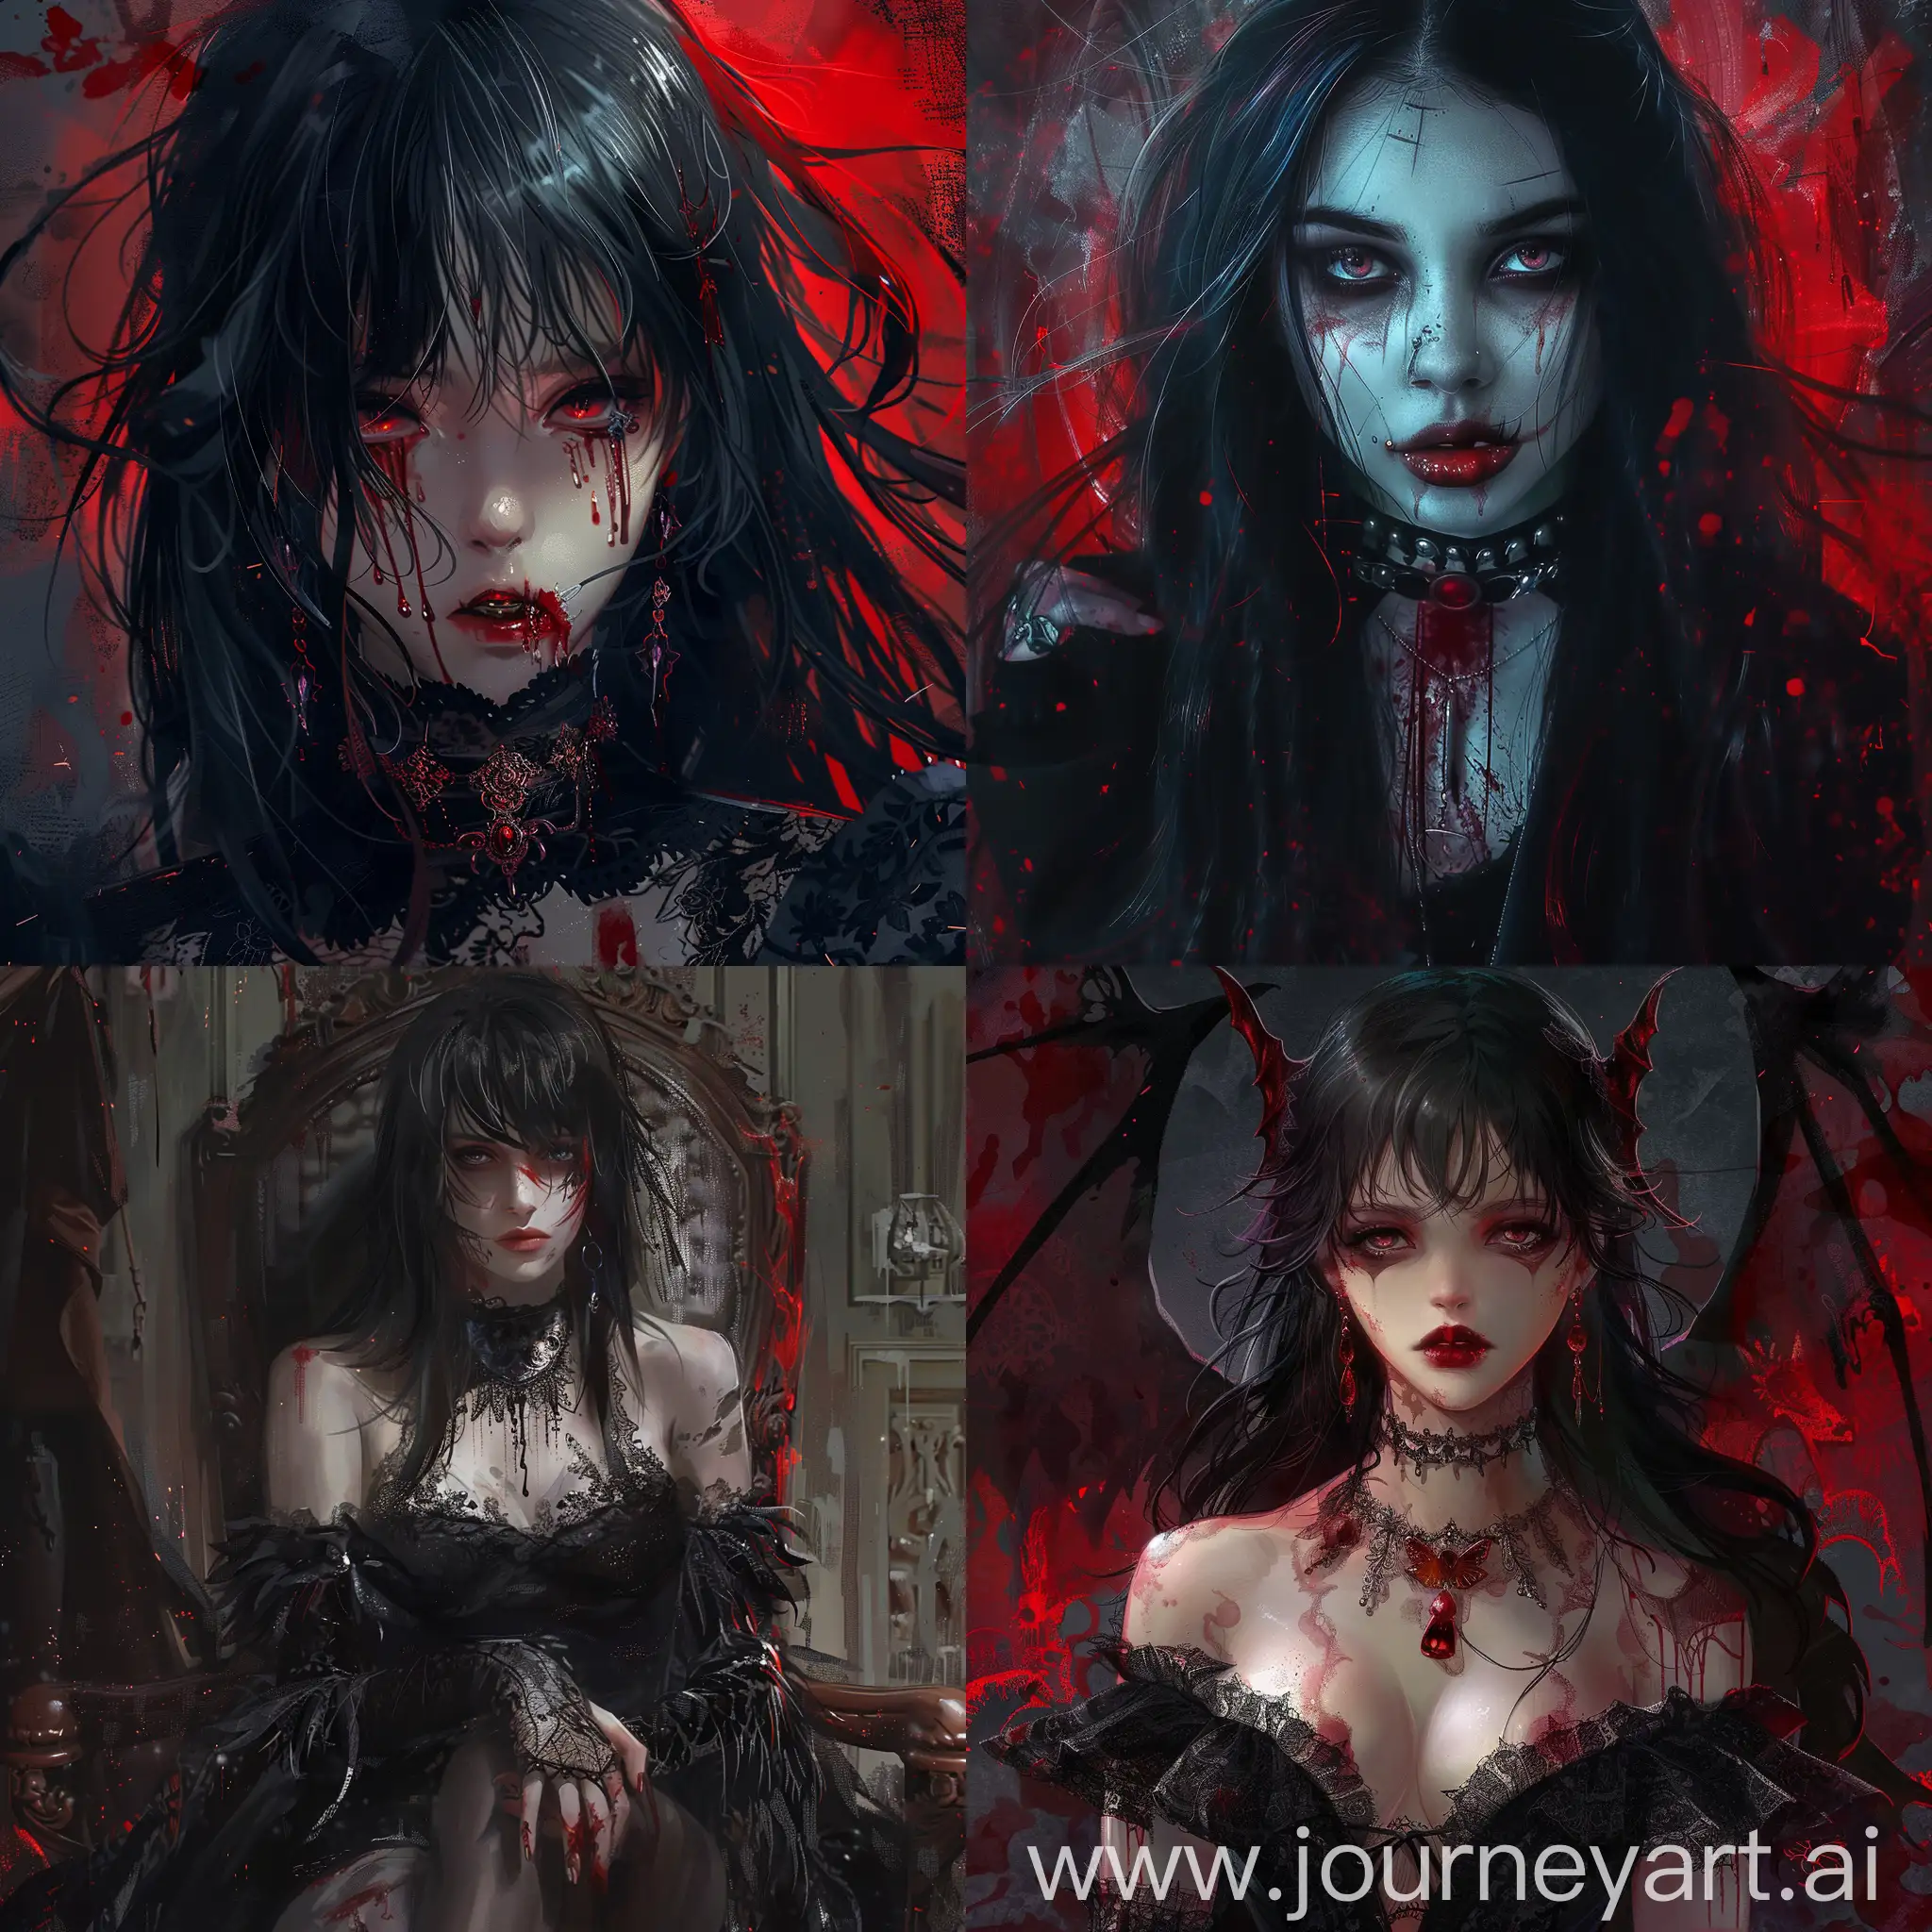 Dark fantasy, gothic horror, anime style, bloody vampire